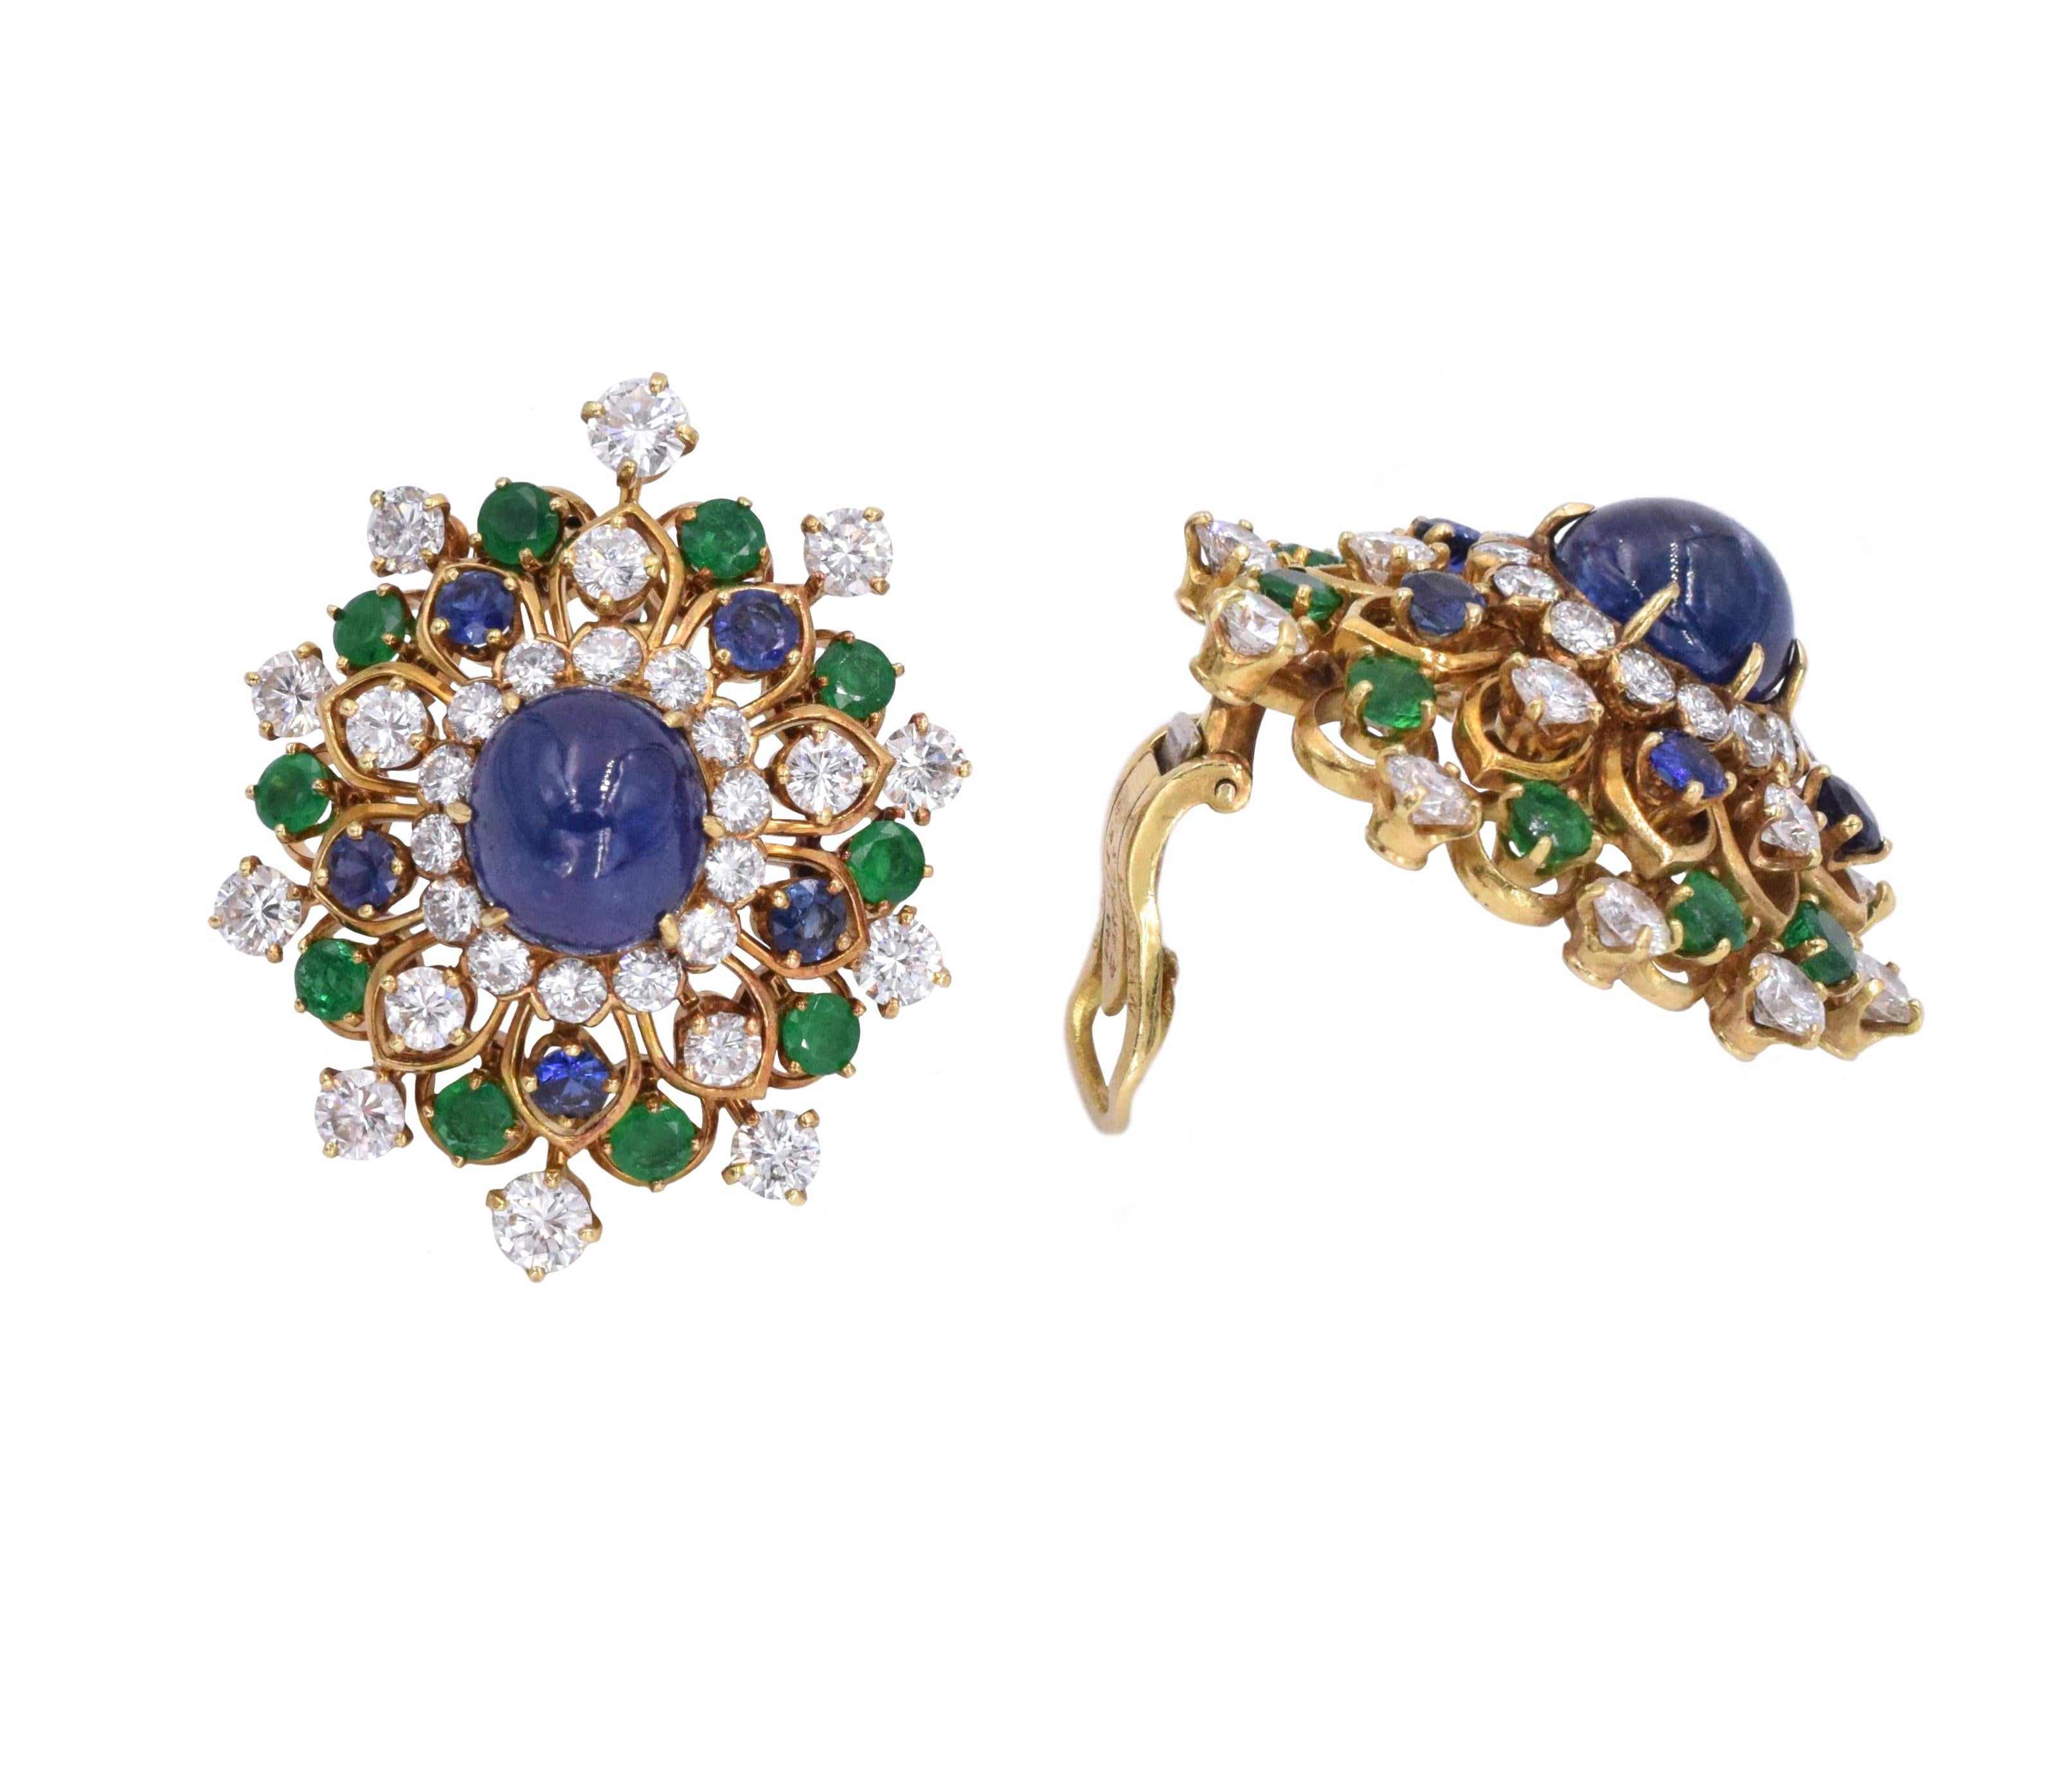 Round Cut Vintage Van Cleef & Arpels Diamond and Gemstone Earrings